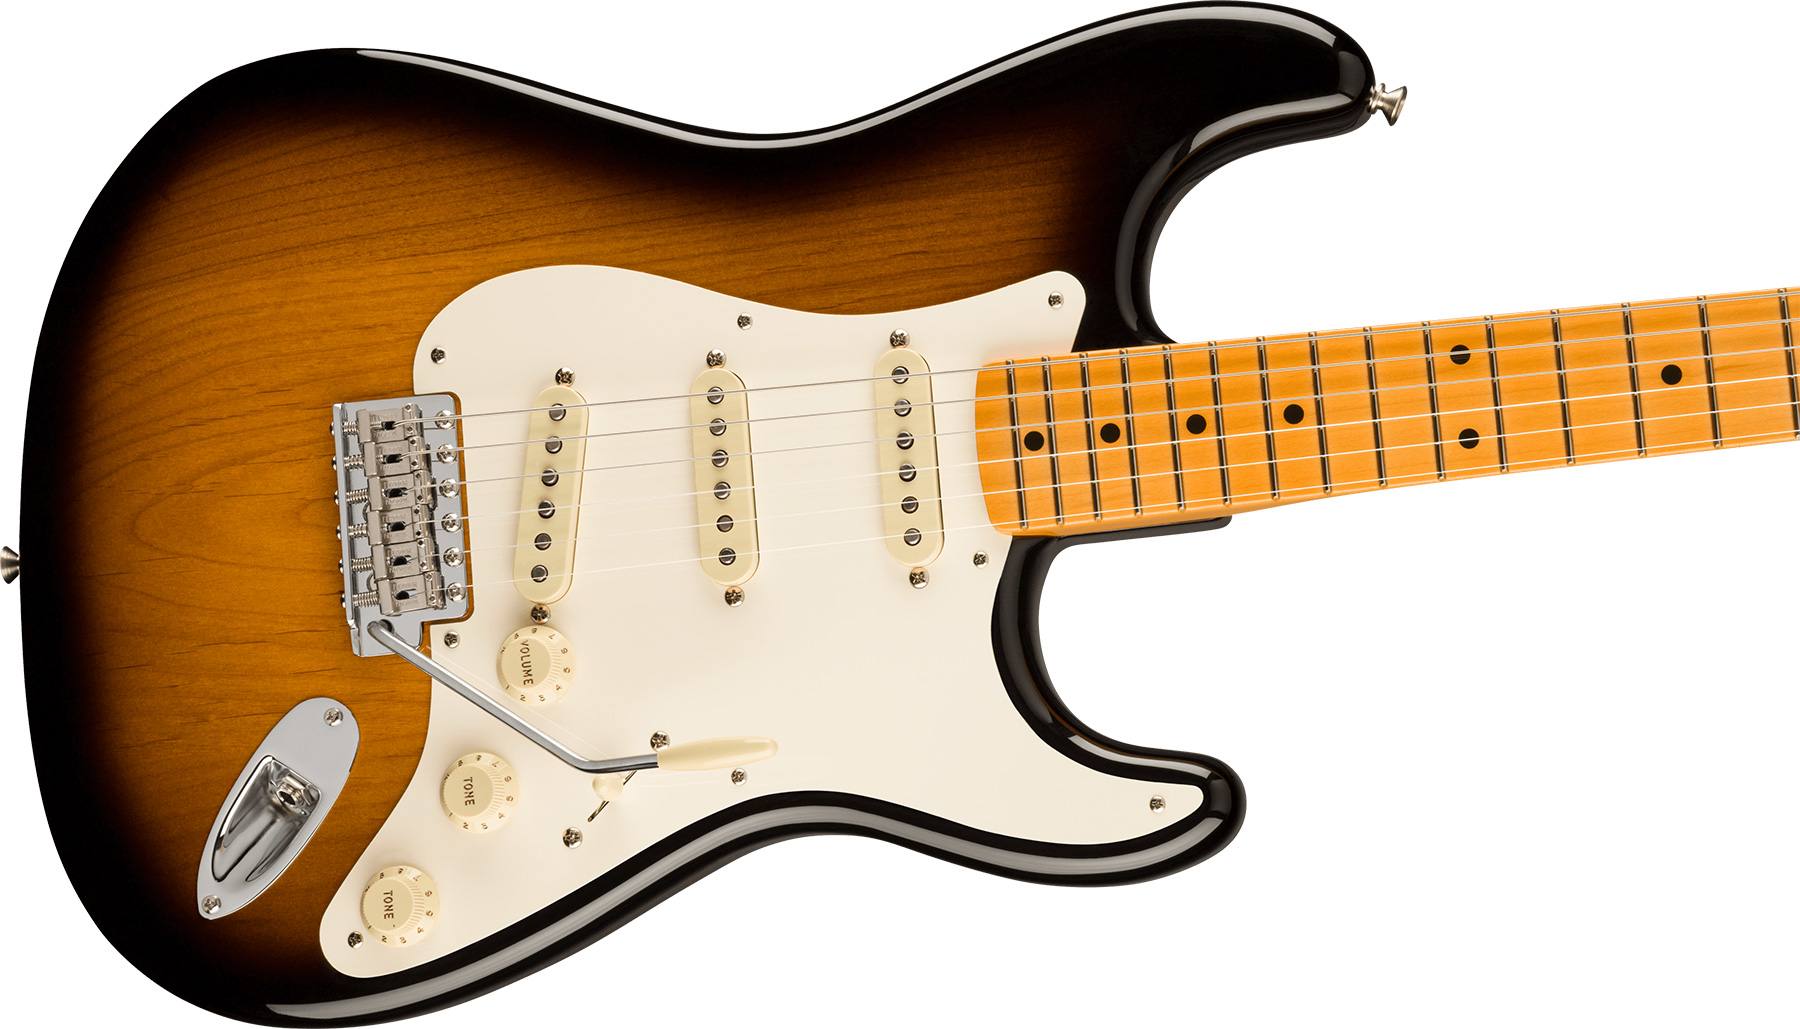 Fender Strat 1957 American Vintage Ii Usa 3s Trem Mn - 2-color Sunburst - Elektrische gitaar in Str-vorm - Variation 2